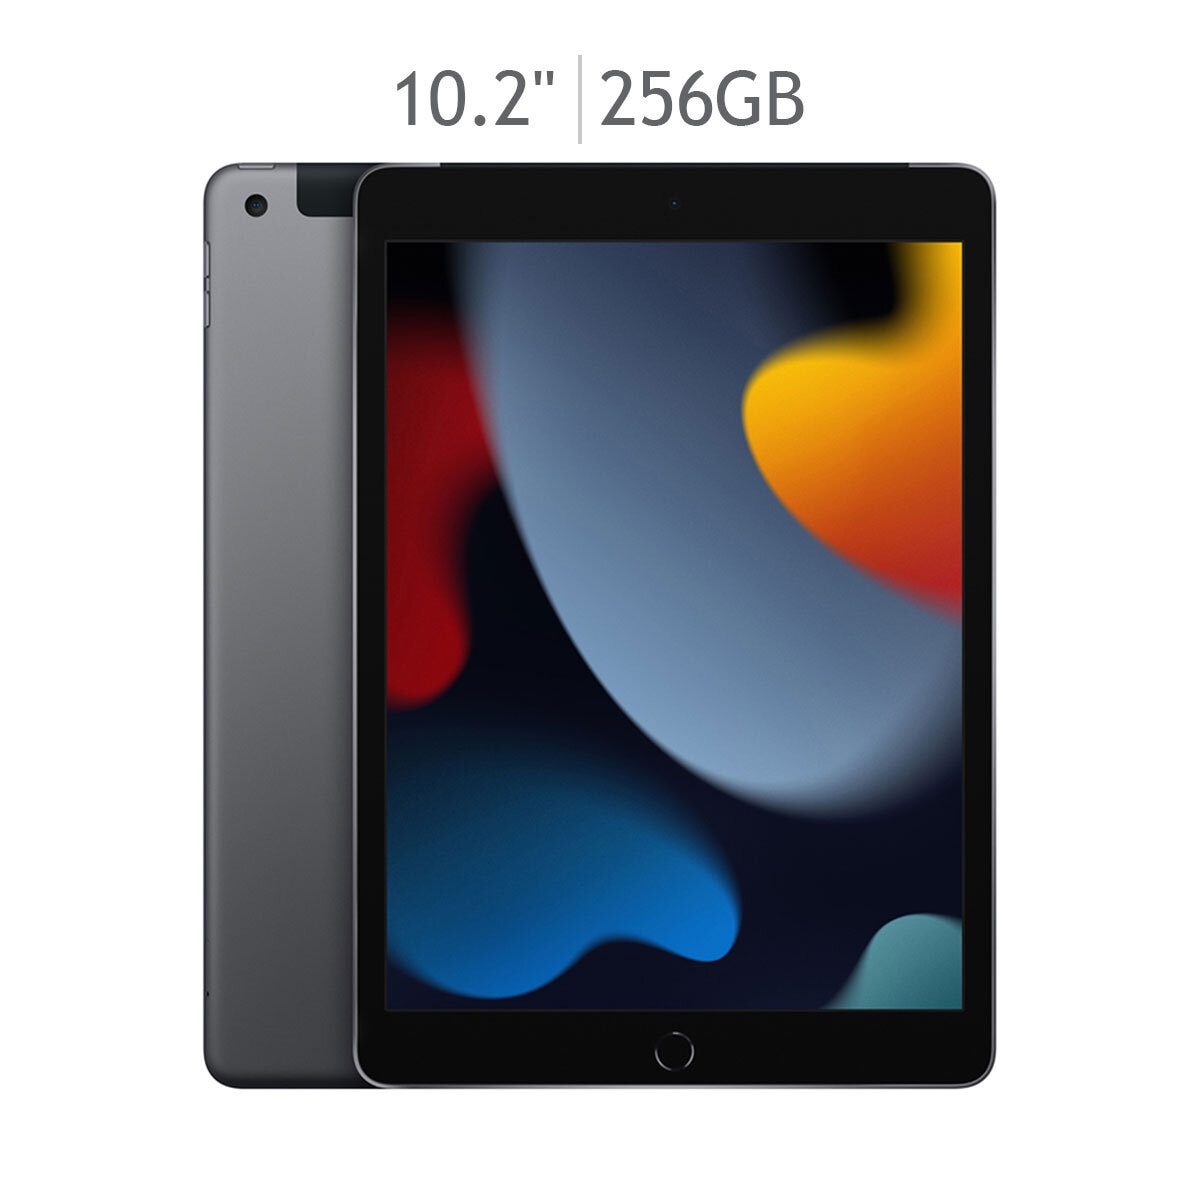 Apple iPad 10.2" Wi-Fi + Celular 256GB Gris Espacial